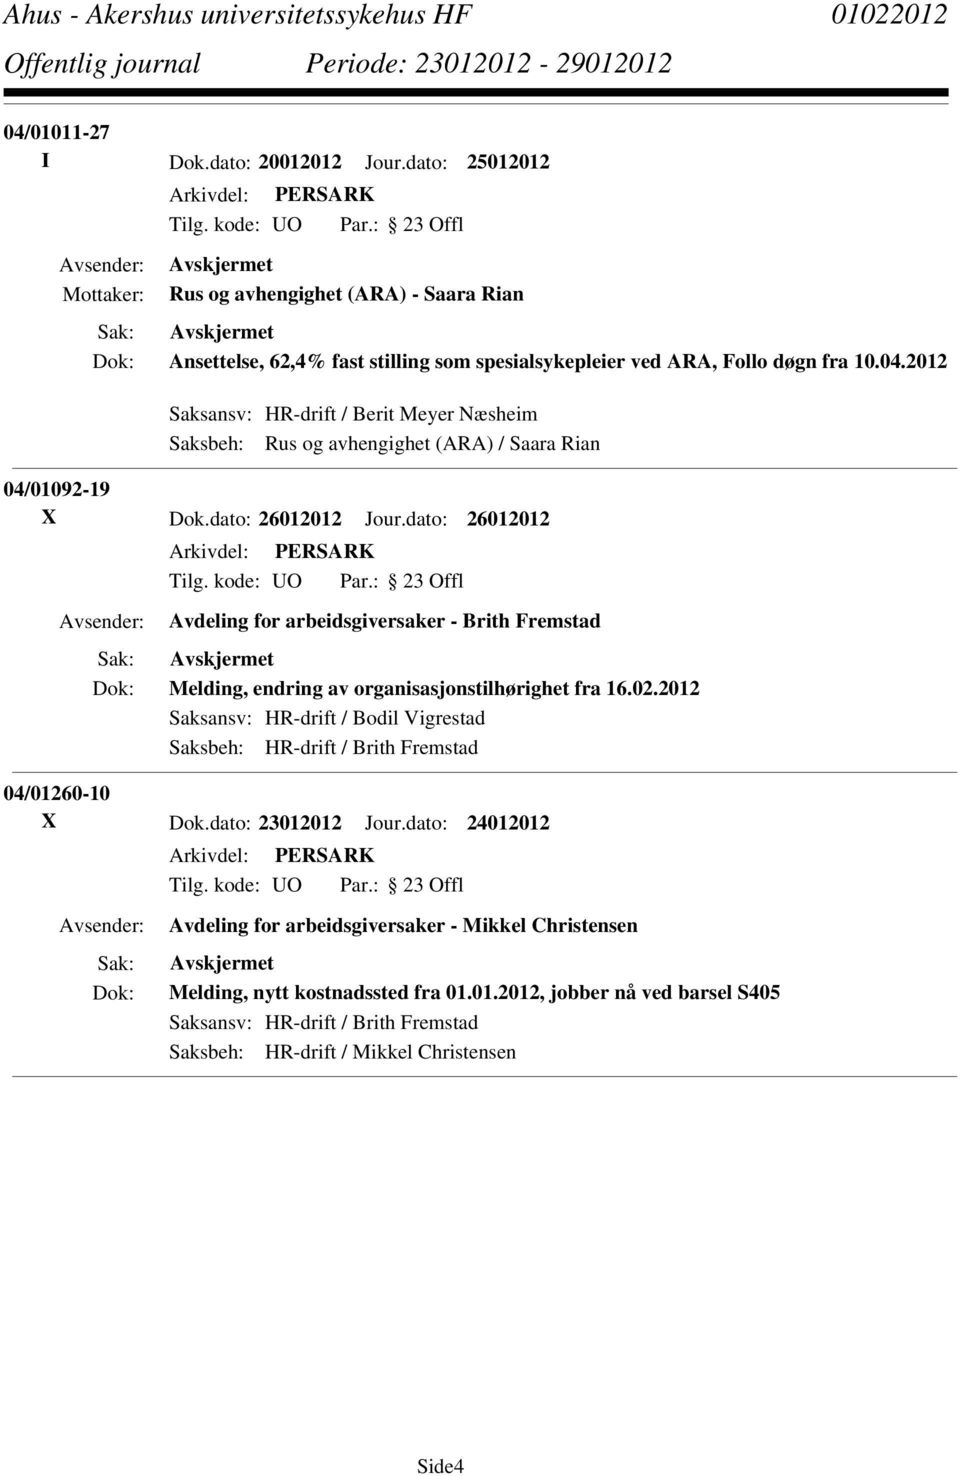 2012 Saksansv: HR-drift / Bodil Vigrestad Saksbeh: HR-drift / Brith Fremstad 04/01260-10 X Dok.dato: 23012012 Jour.